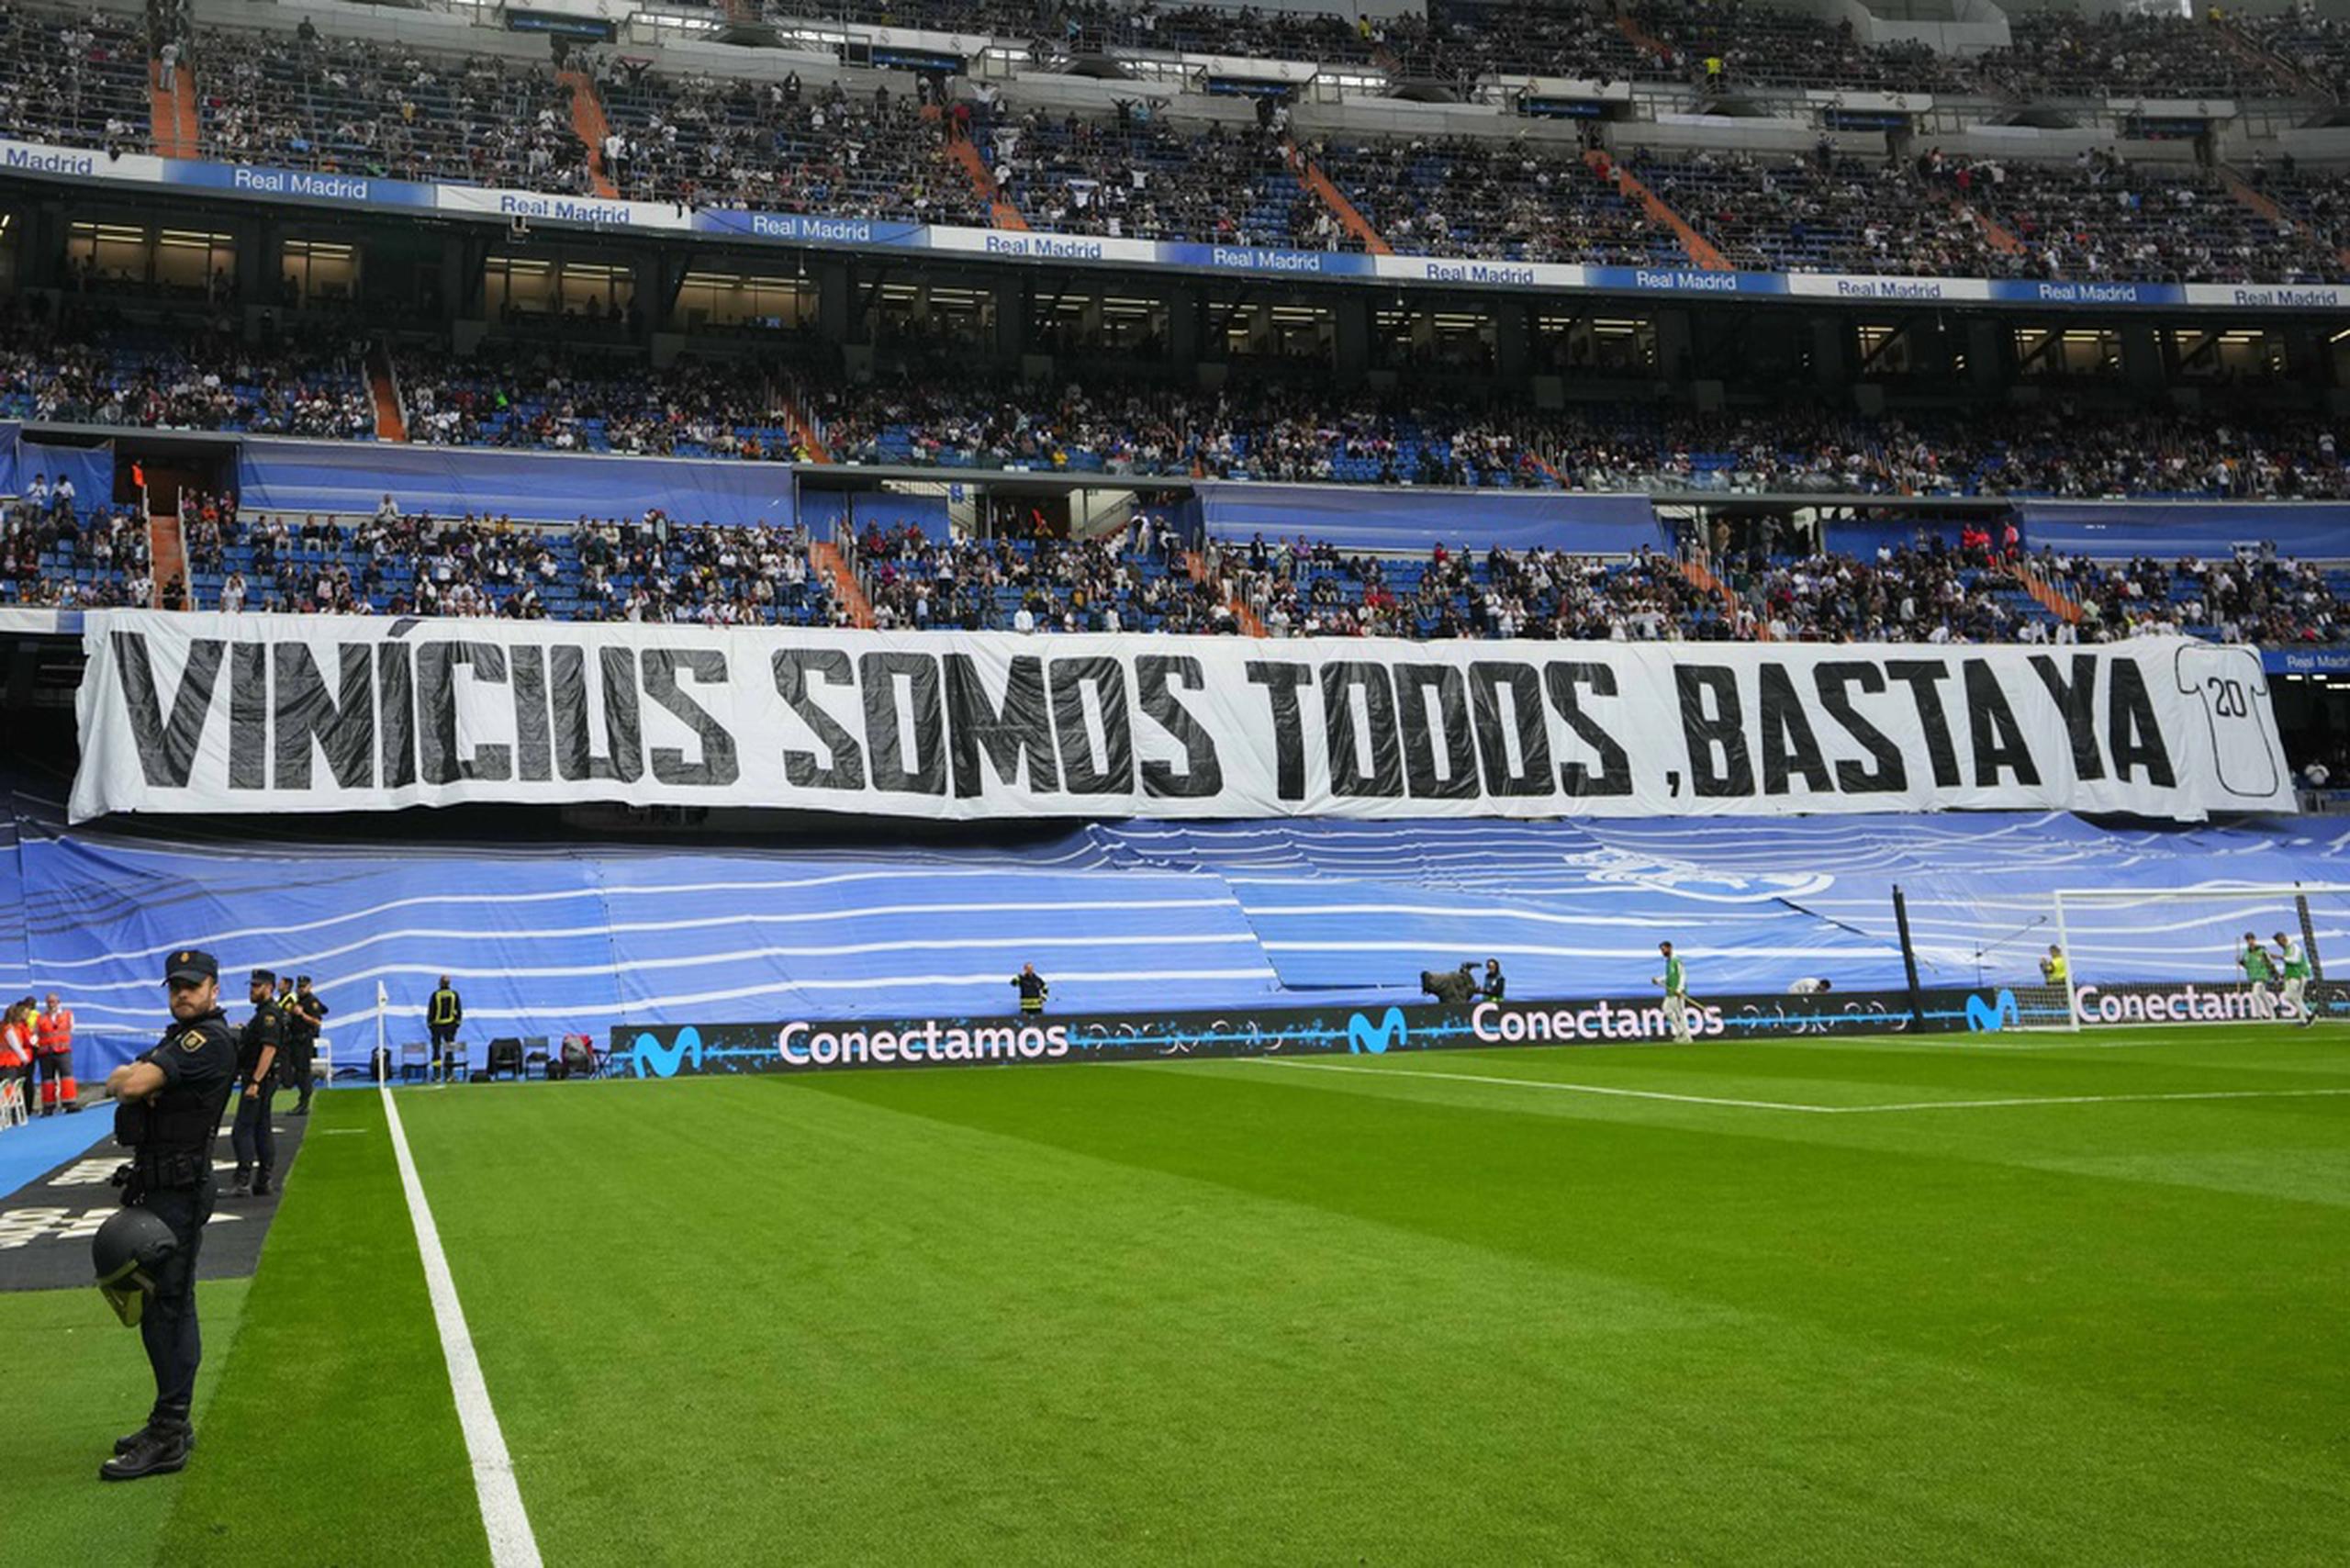 En la Liga española, espectadores despliegan la pancarta con la frase "Vinicius Somos Todos, Basta Ya" en el estadio Santiago Bernabéu, en defensa al jugador brasileño Vinicius Jr., quien ha sido objeto de burlas racistas en diferentes estadios en España.